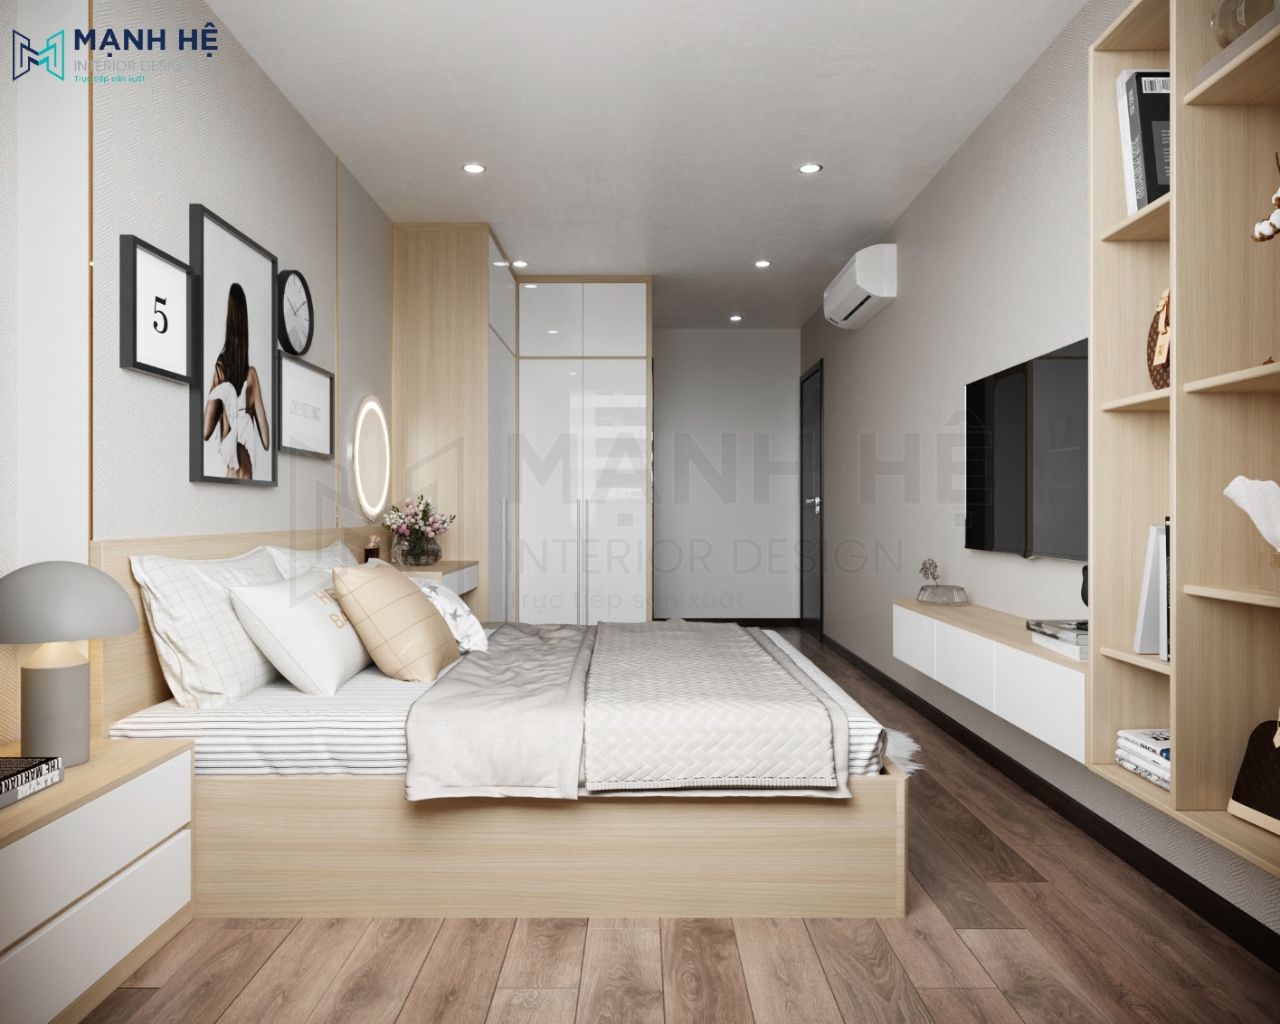 Nội thất phòng ngủ bố trí hợp lí, tối ưu không gian diện tích